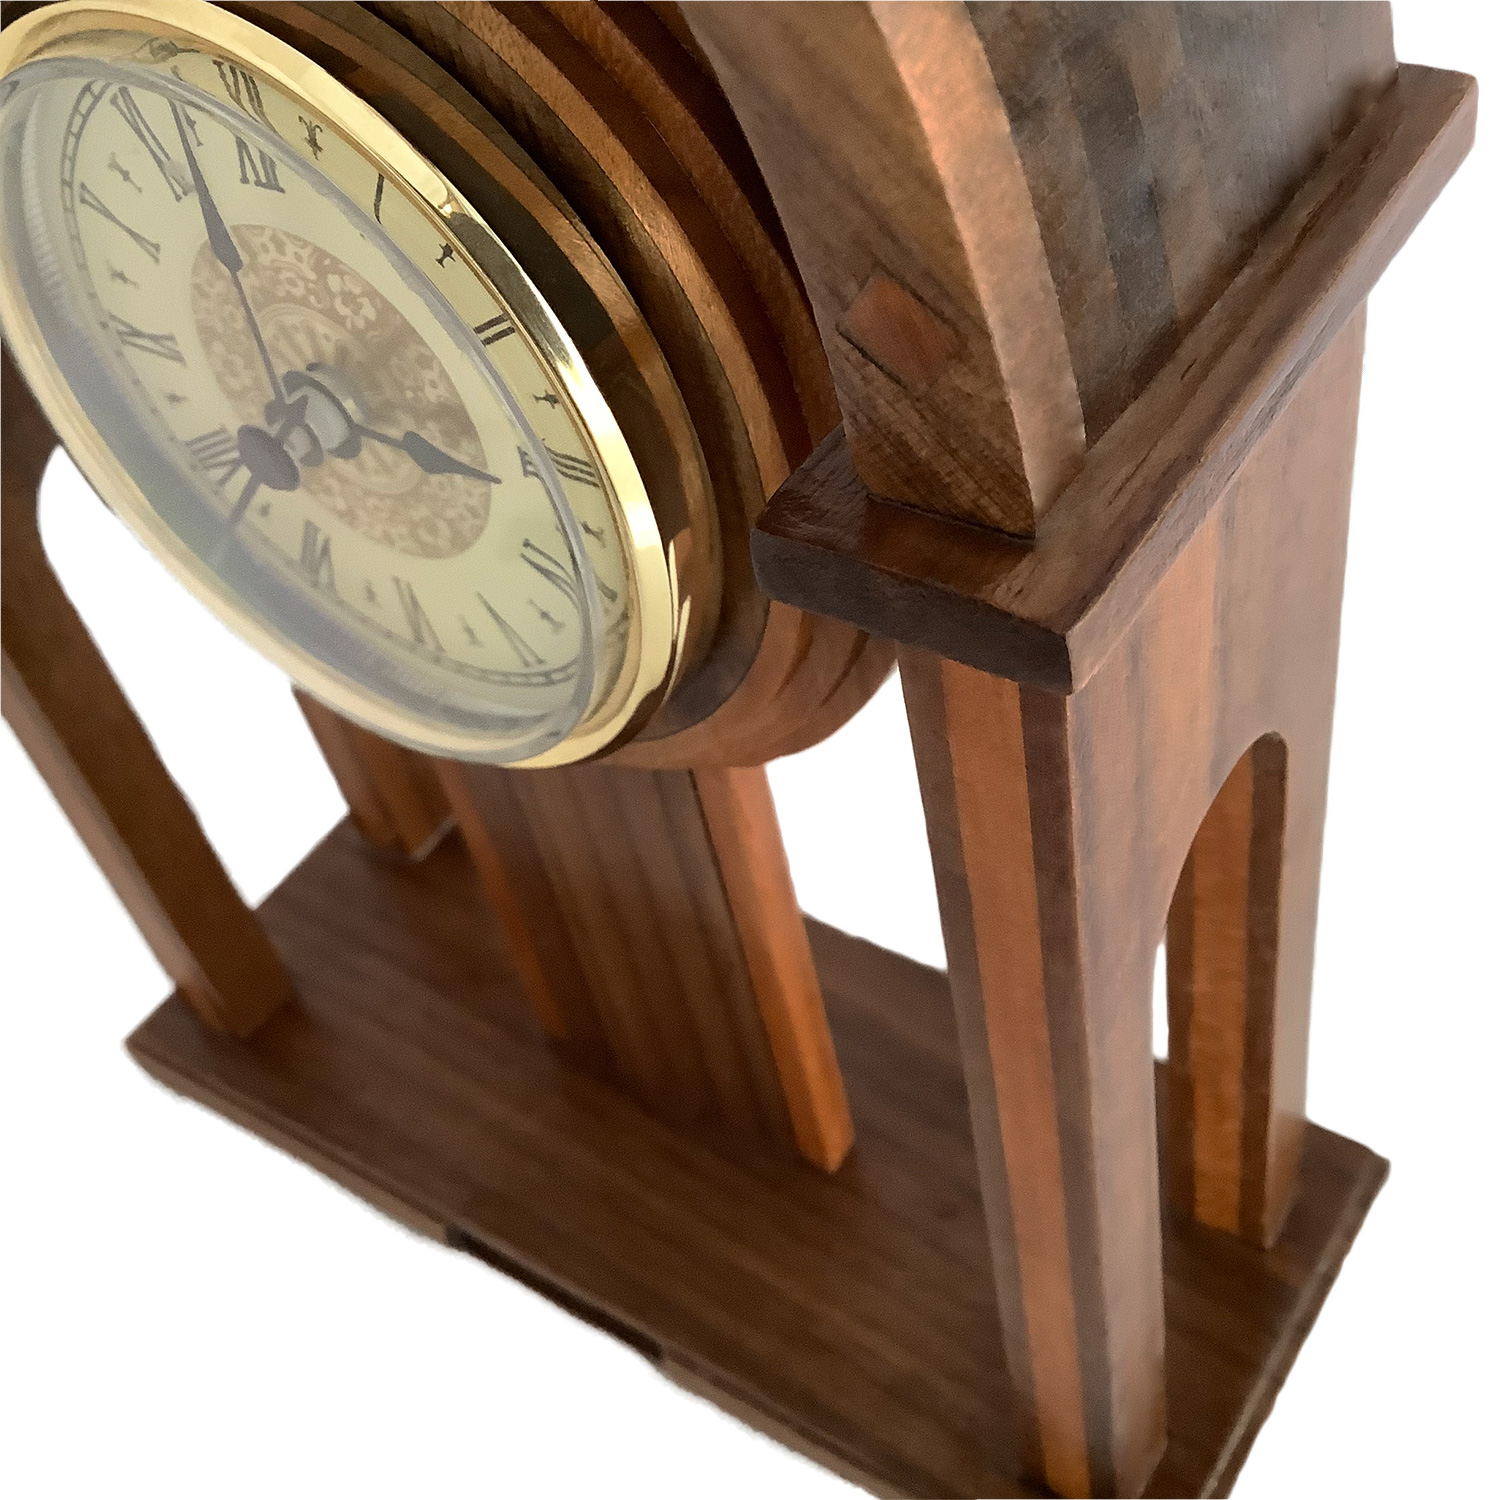 木製時計キット(タイプF)画像